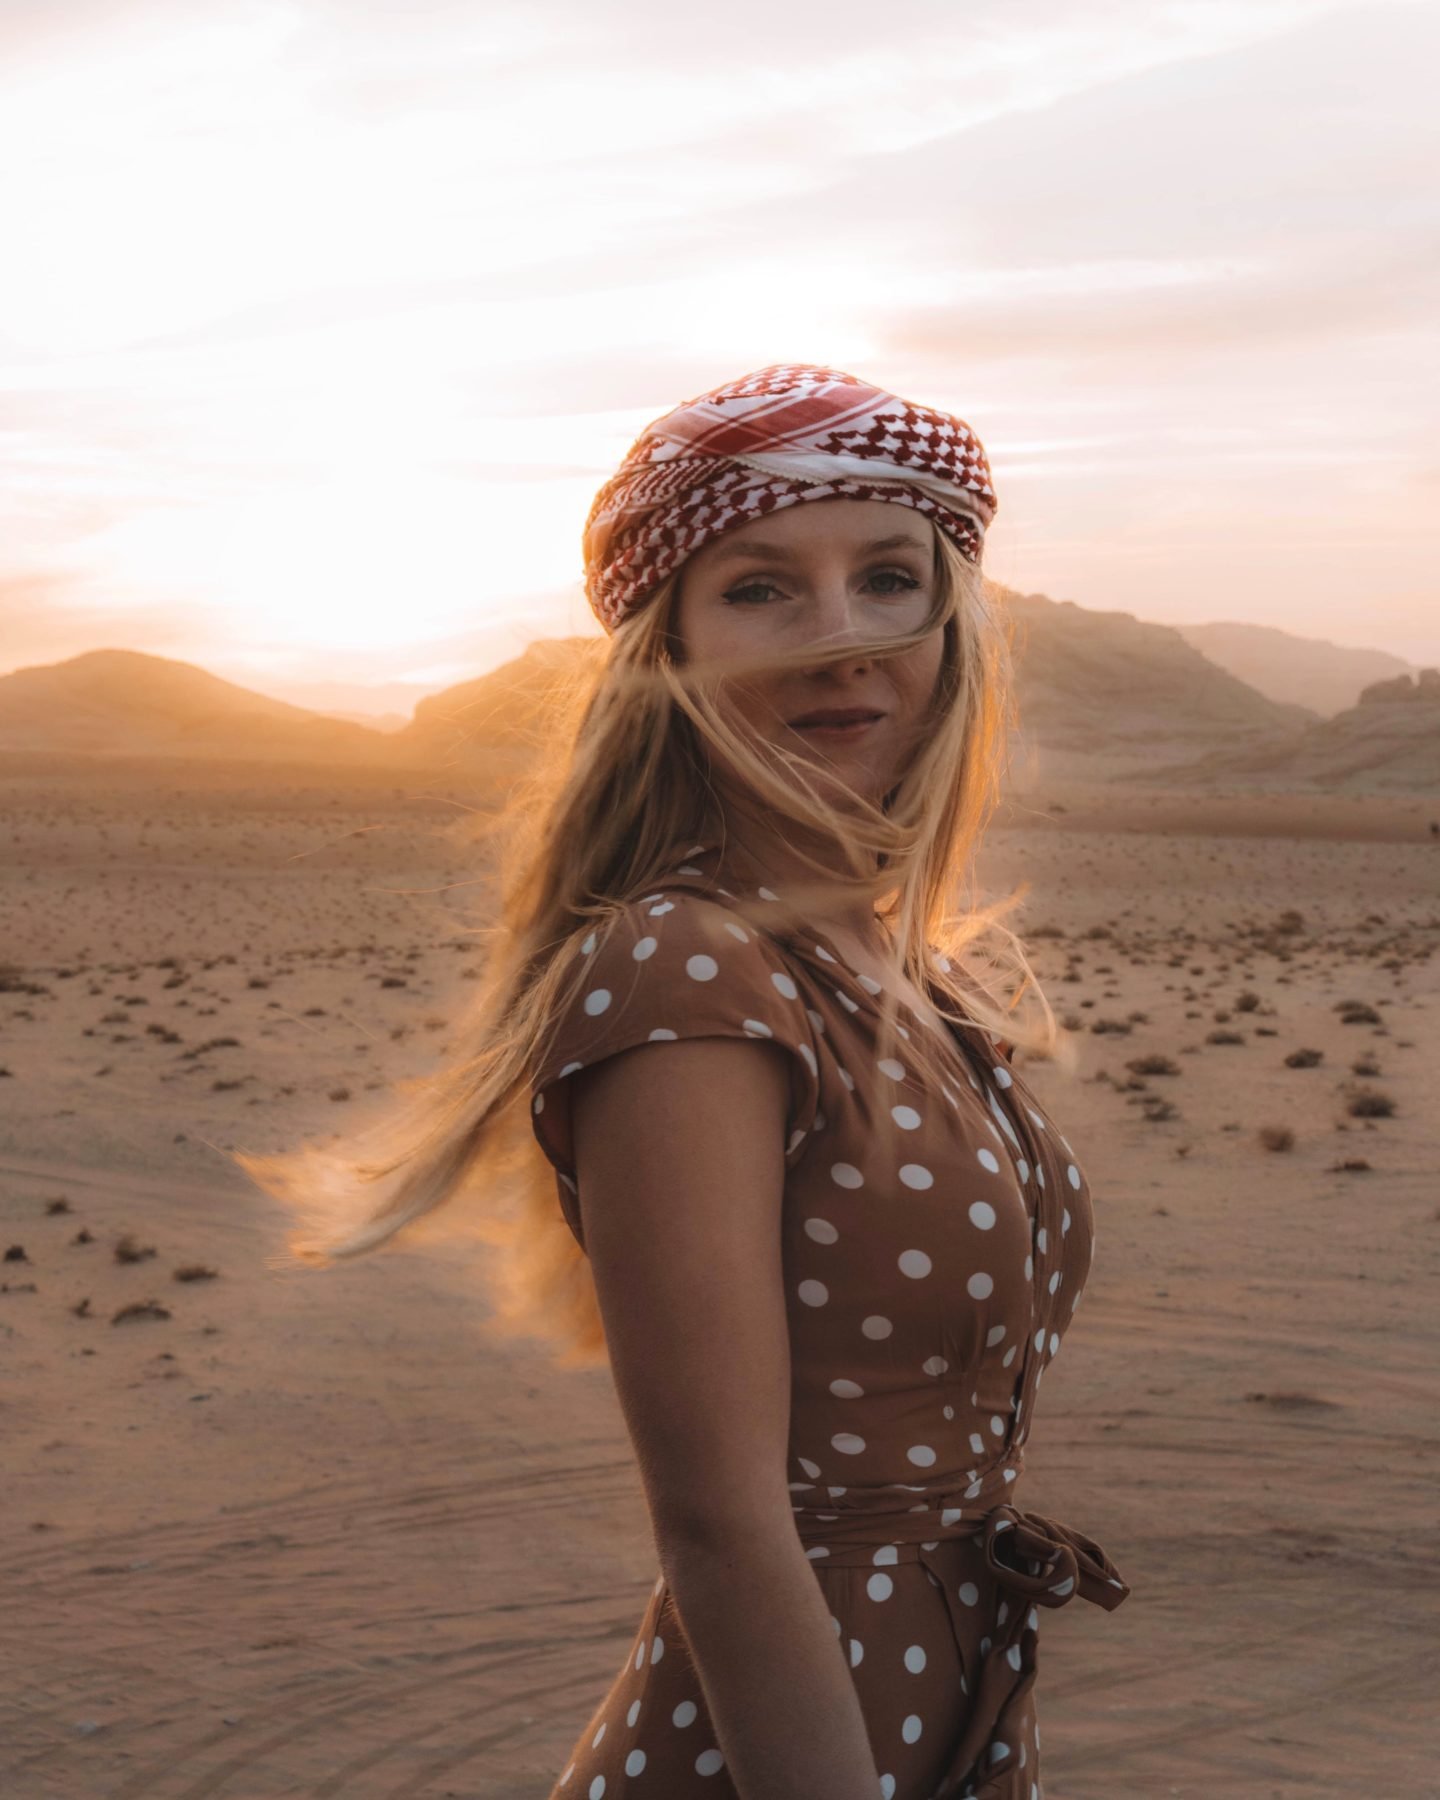 Un portrait de Chiara lors du couché de soleil dans le désert de wadi rum en Jordanie. Configurer un appareil photo permet d'avoir de beaux portraits.